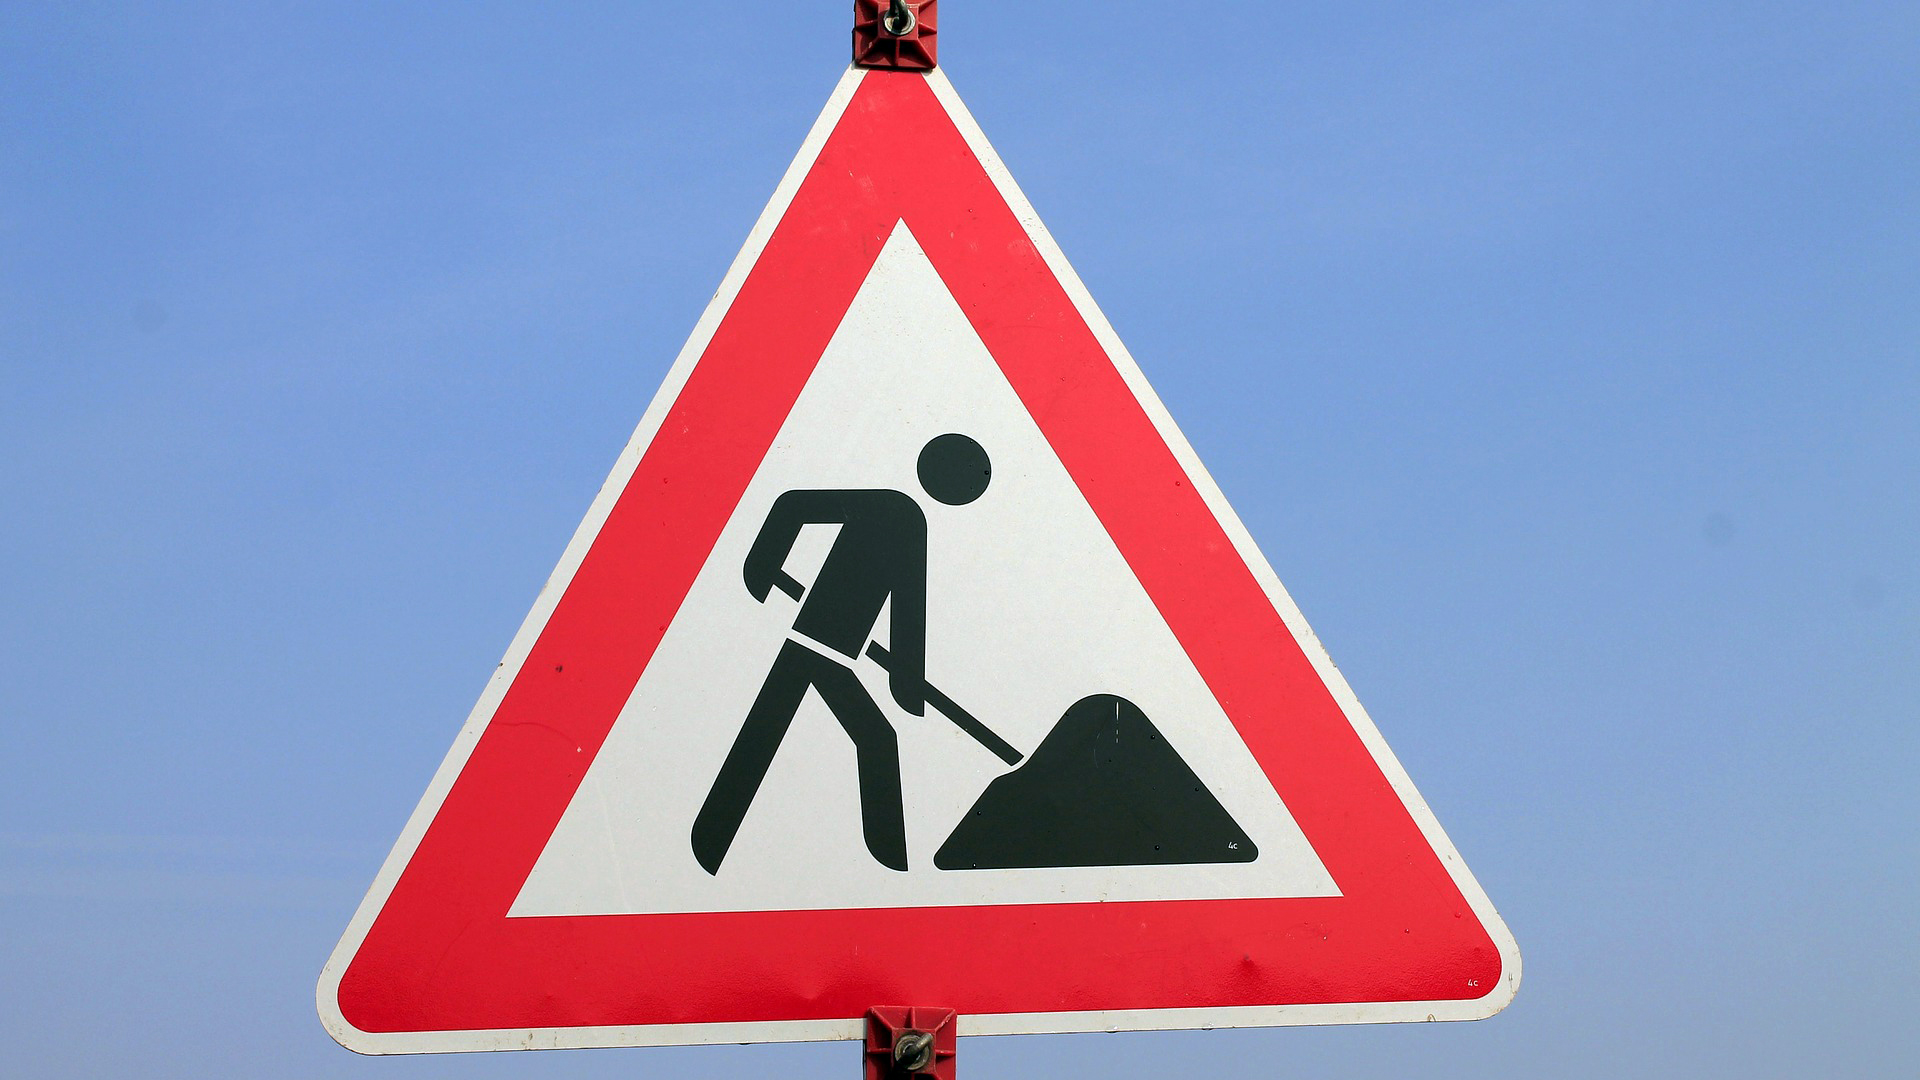 Das Verkehrsschild "Achtung Bauarbeiten". Ein weißes Dreieck mit rotem Rand, mittig ein Männchen mit einer Schaufel.